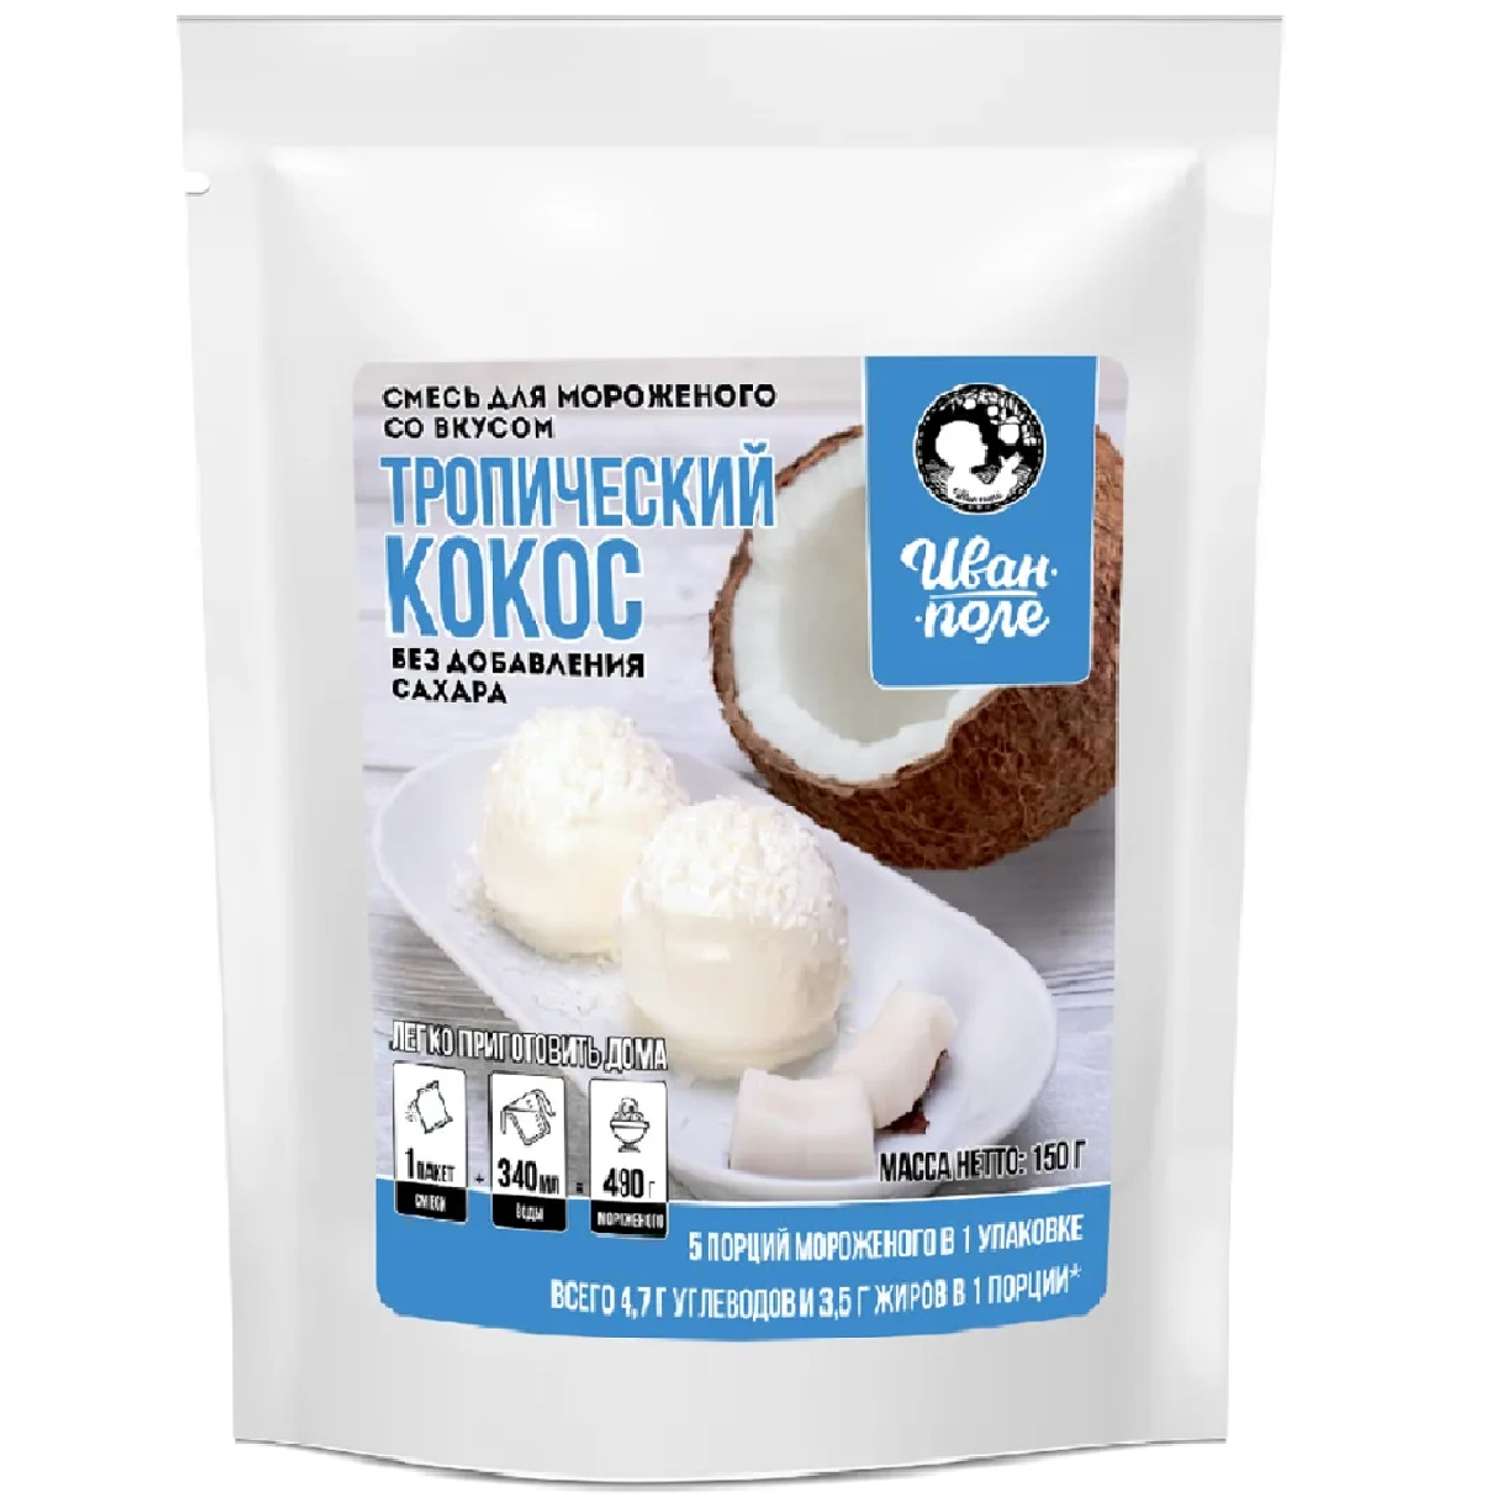 Смесь для мороженого Иван-поле Тропический кокос без сахара 150 г - фото 1